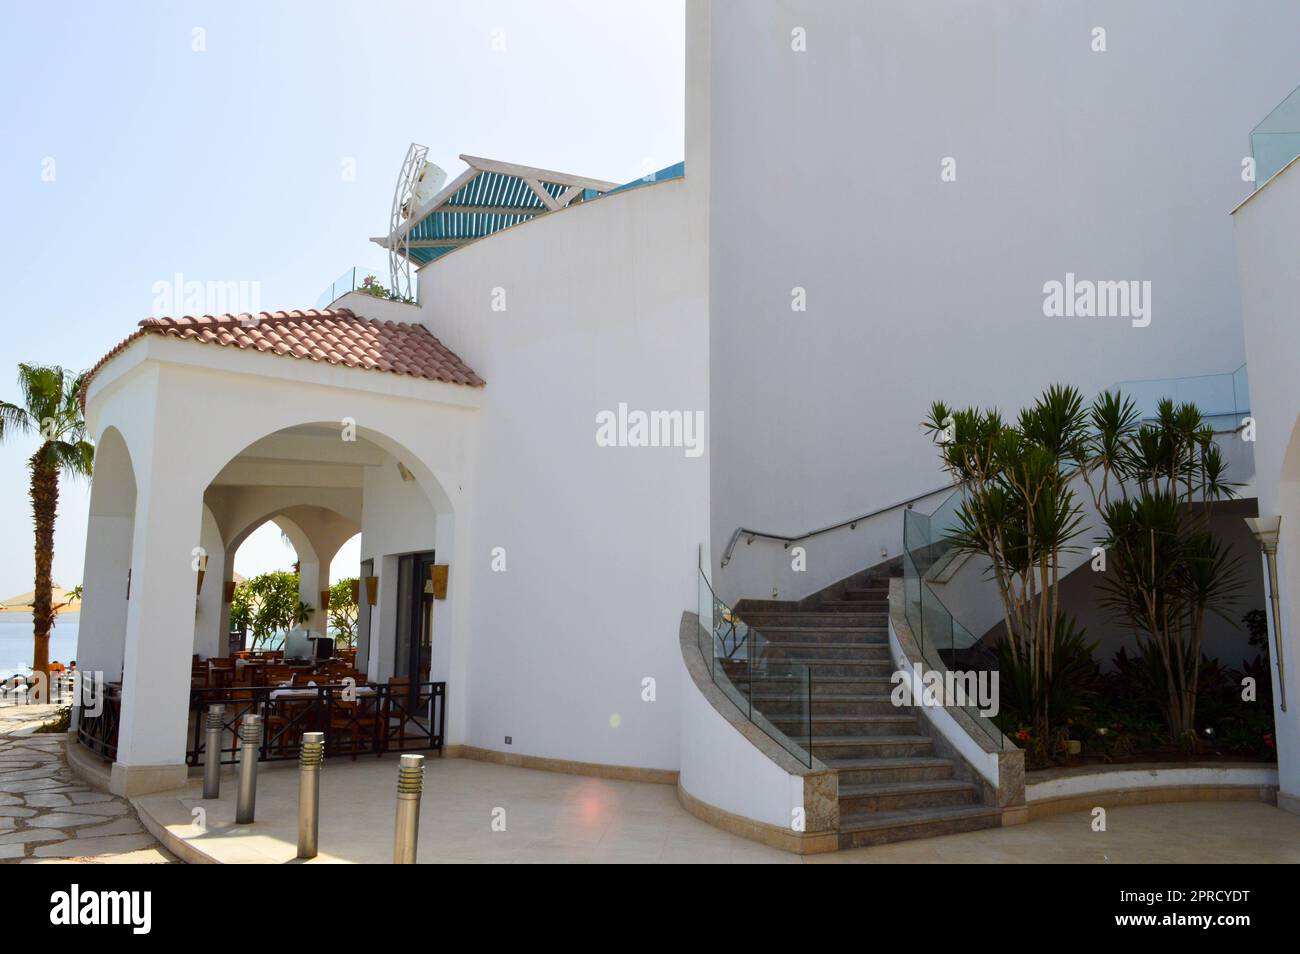 Ein großes stabiles weißes Betonsteingebäude mit einem Dach aus roten Fliesen in einem warmen tropischen exotischen südlichen Resort, das sich am blauen Meer von Palmen tr. Befindet Stockfoto